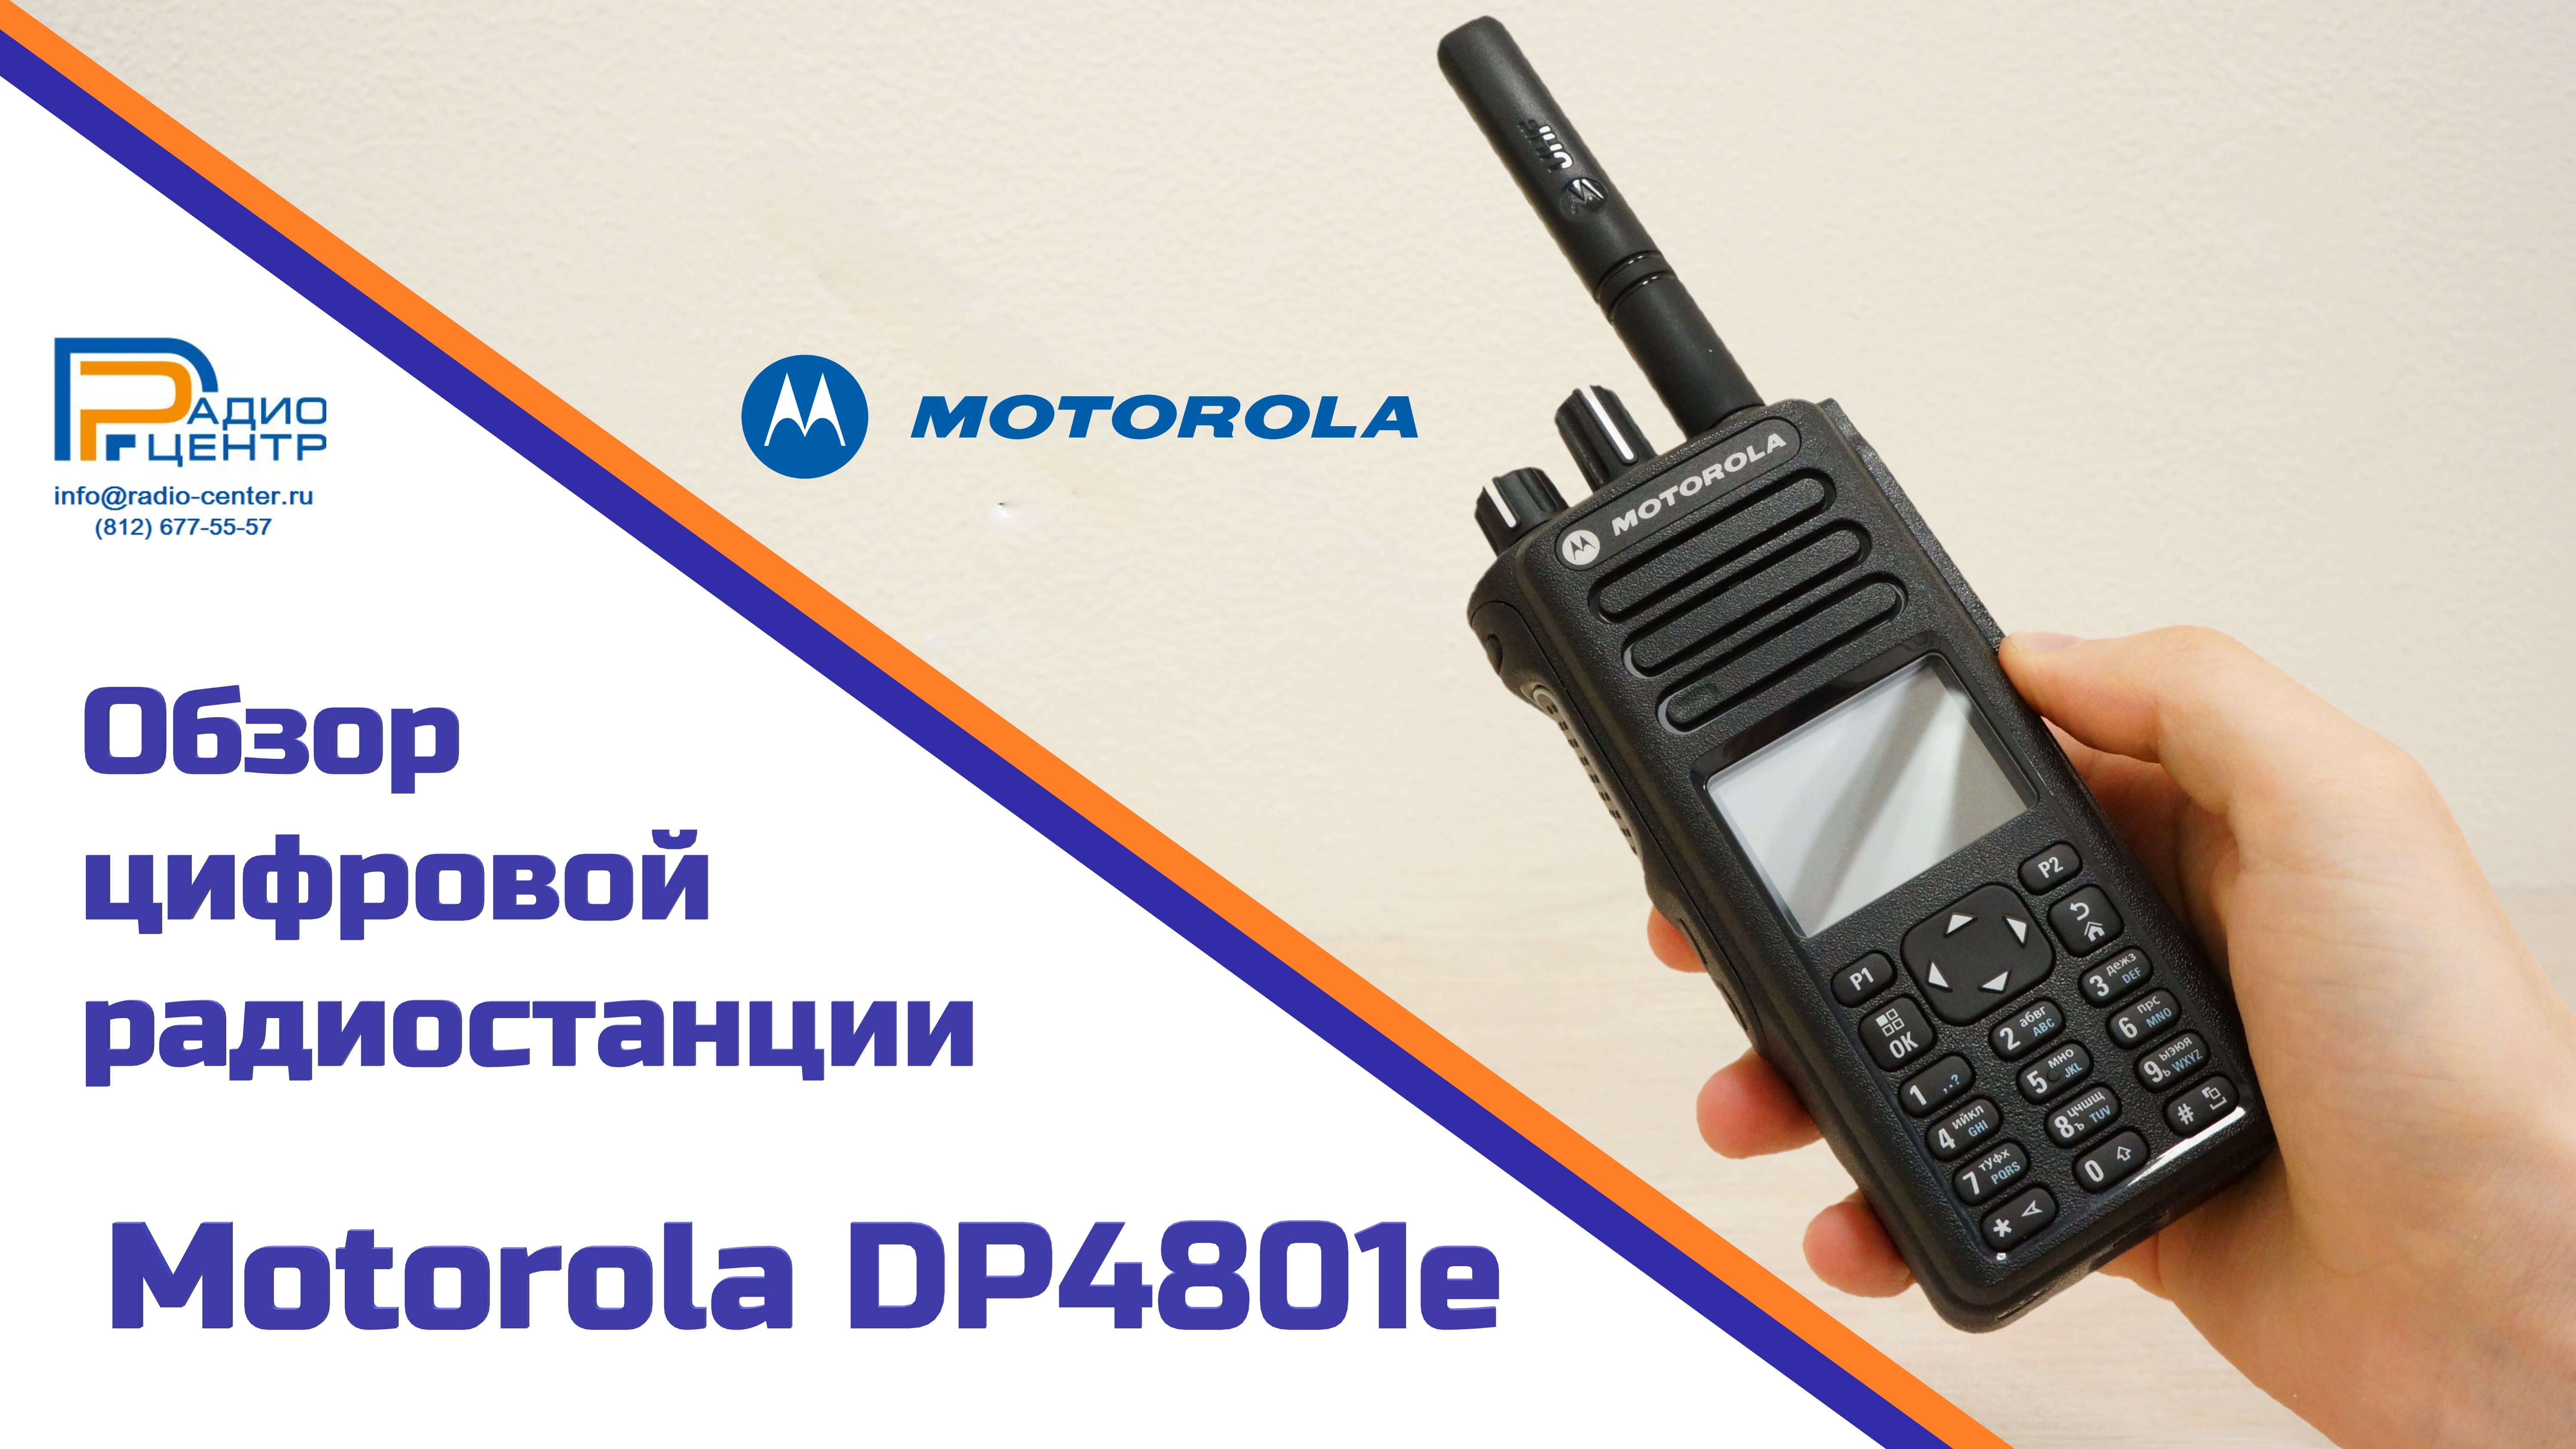 Motorola DP4801e - обзор многофункциональной цифровой радиостанции | Радиоцентр